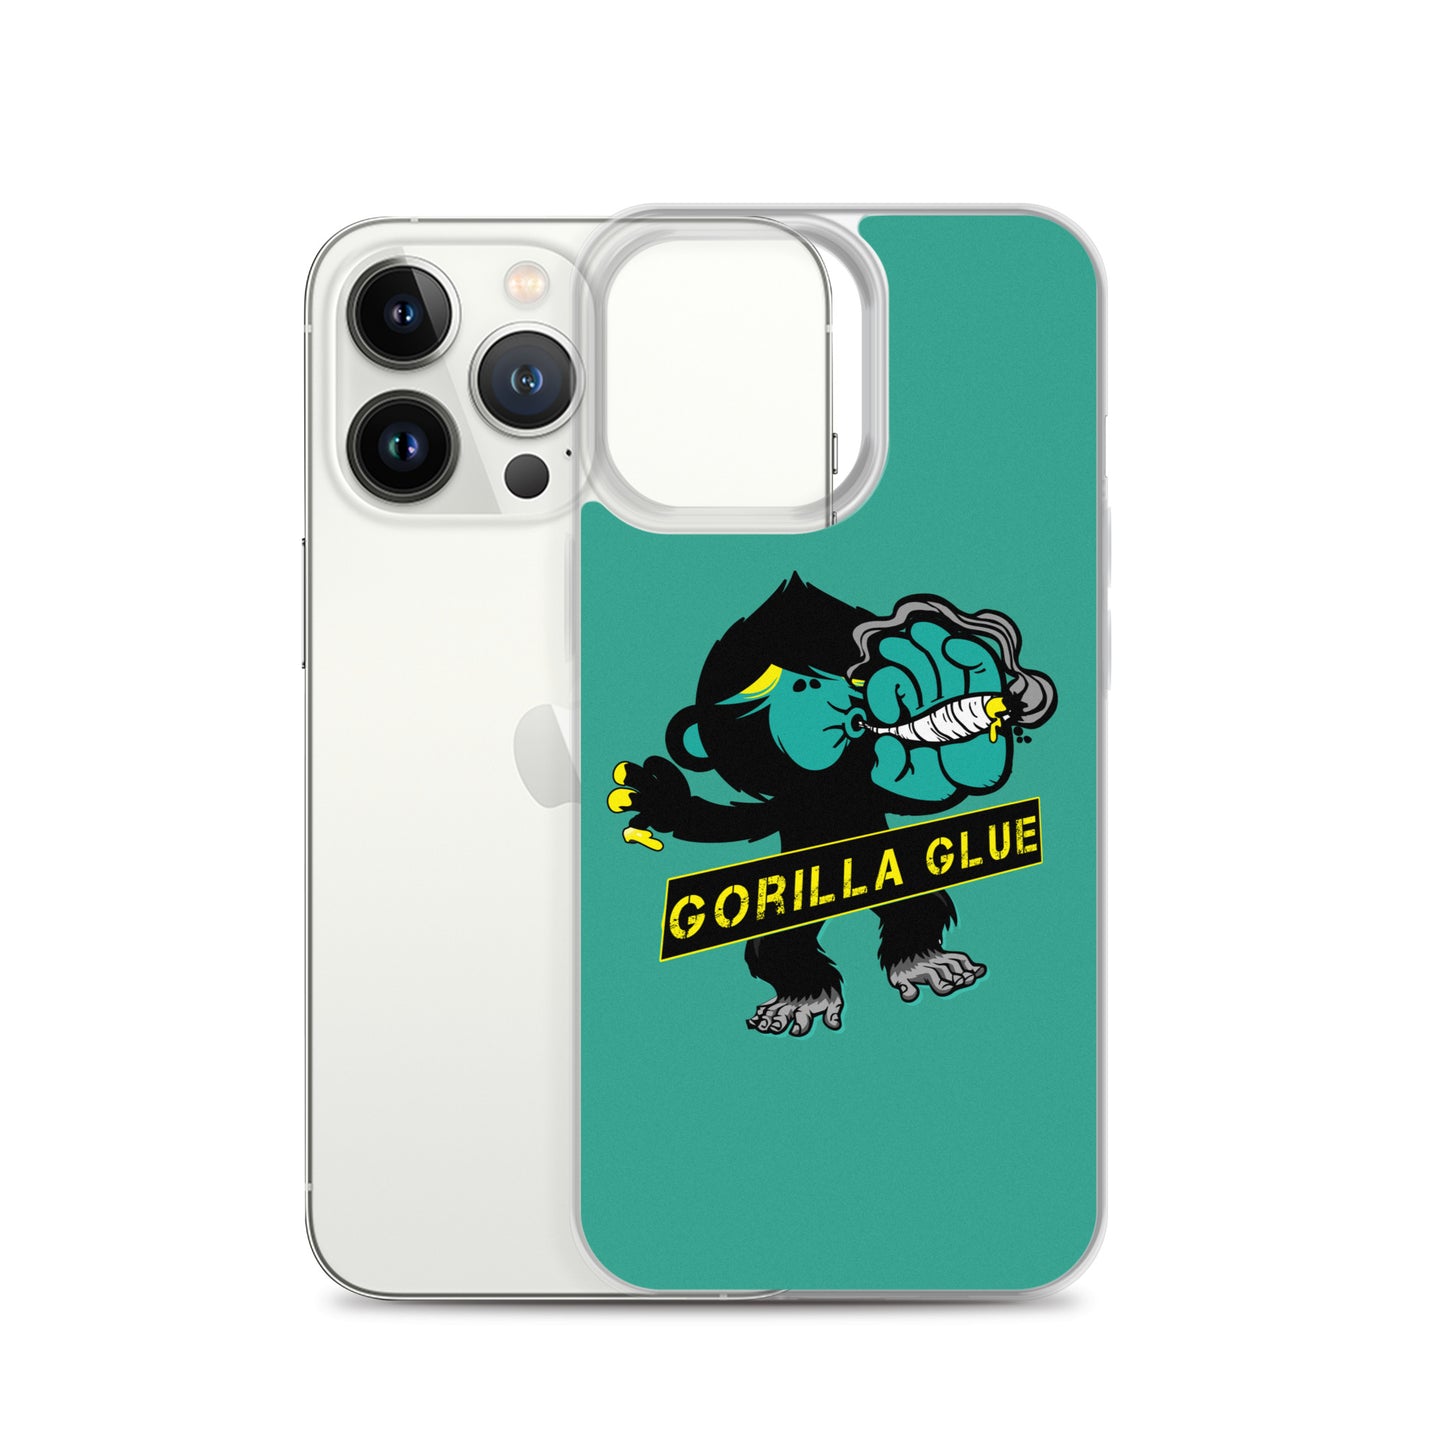 "Gorilla Glue" iPhone case